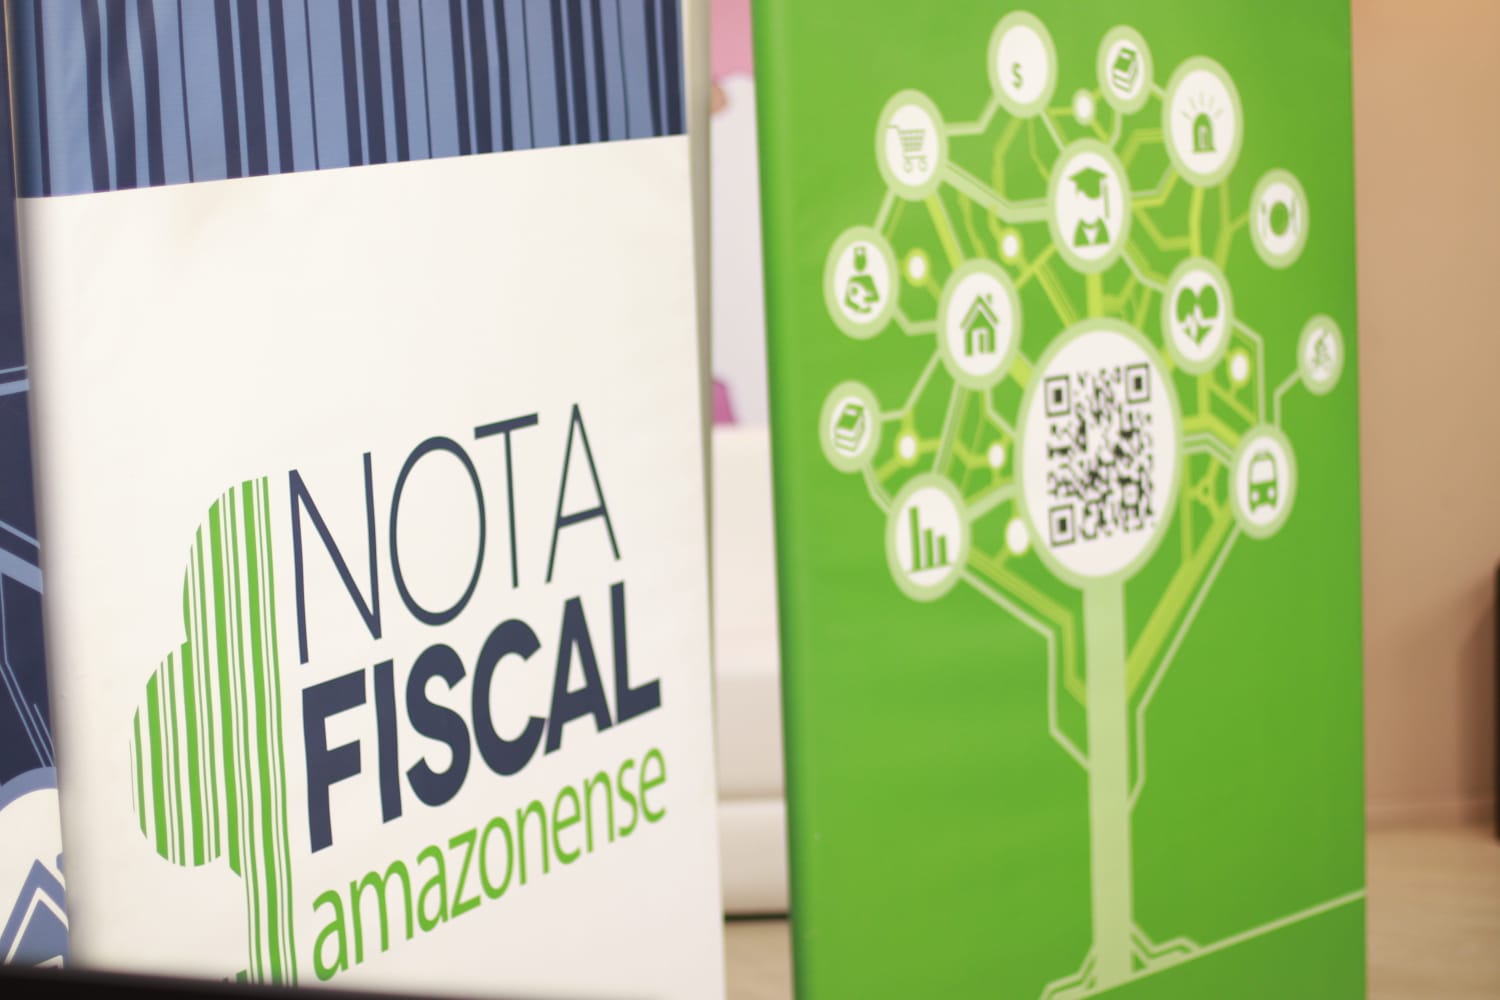 Confira os ganhadores do sorteio da Nota Fiscal Amazonense